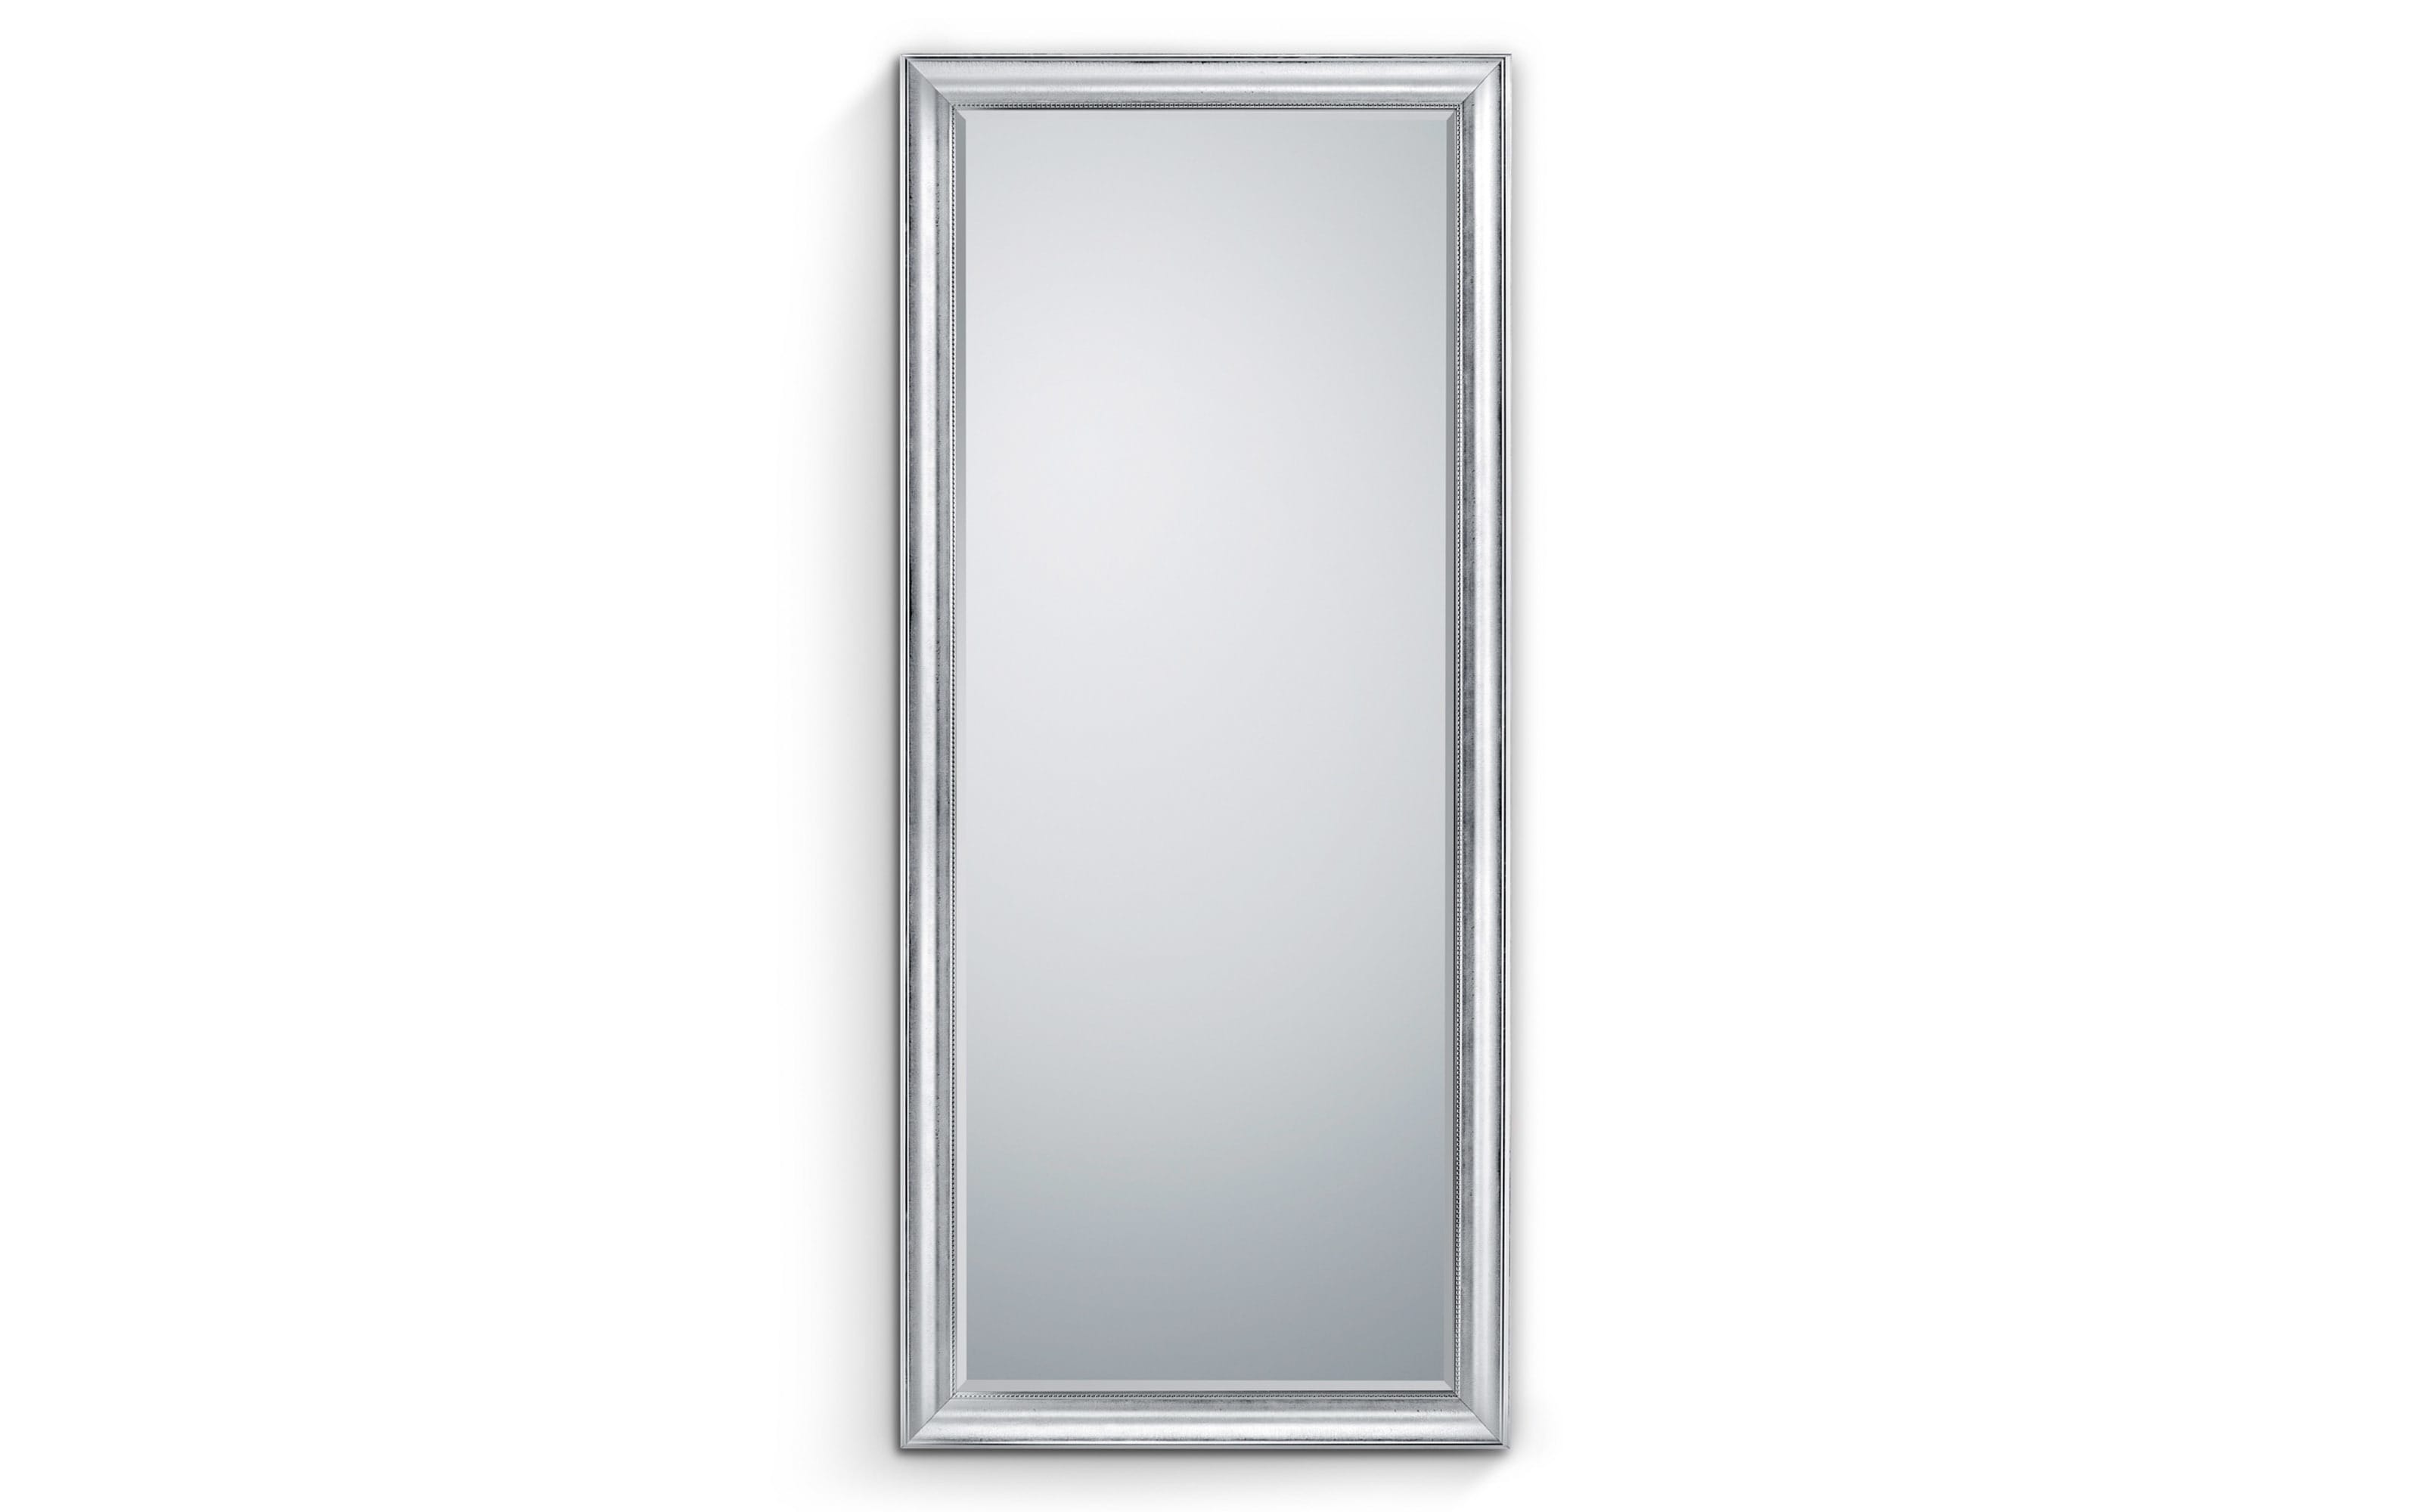 Rahmenspiegel Mia, chromfarbig, 80 x 180 cm 